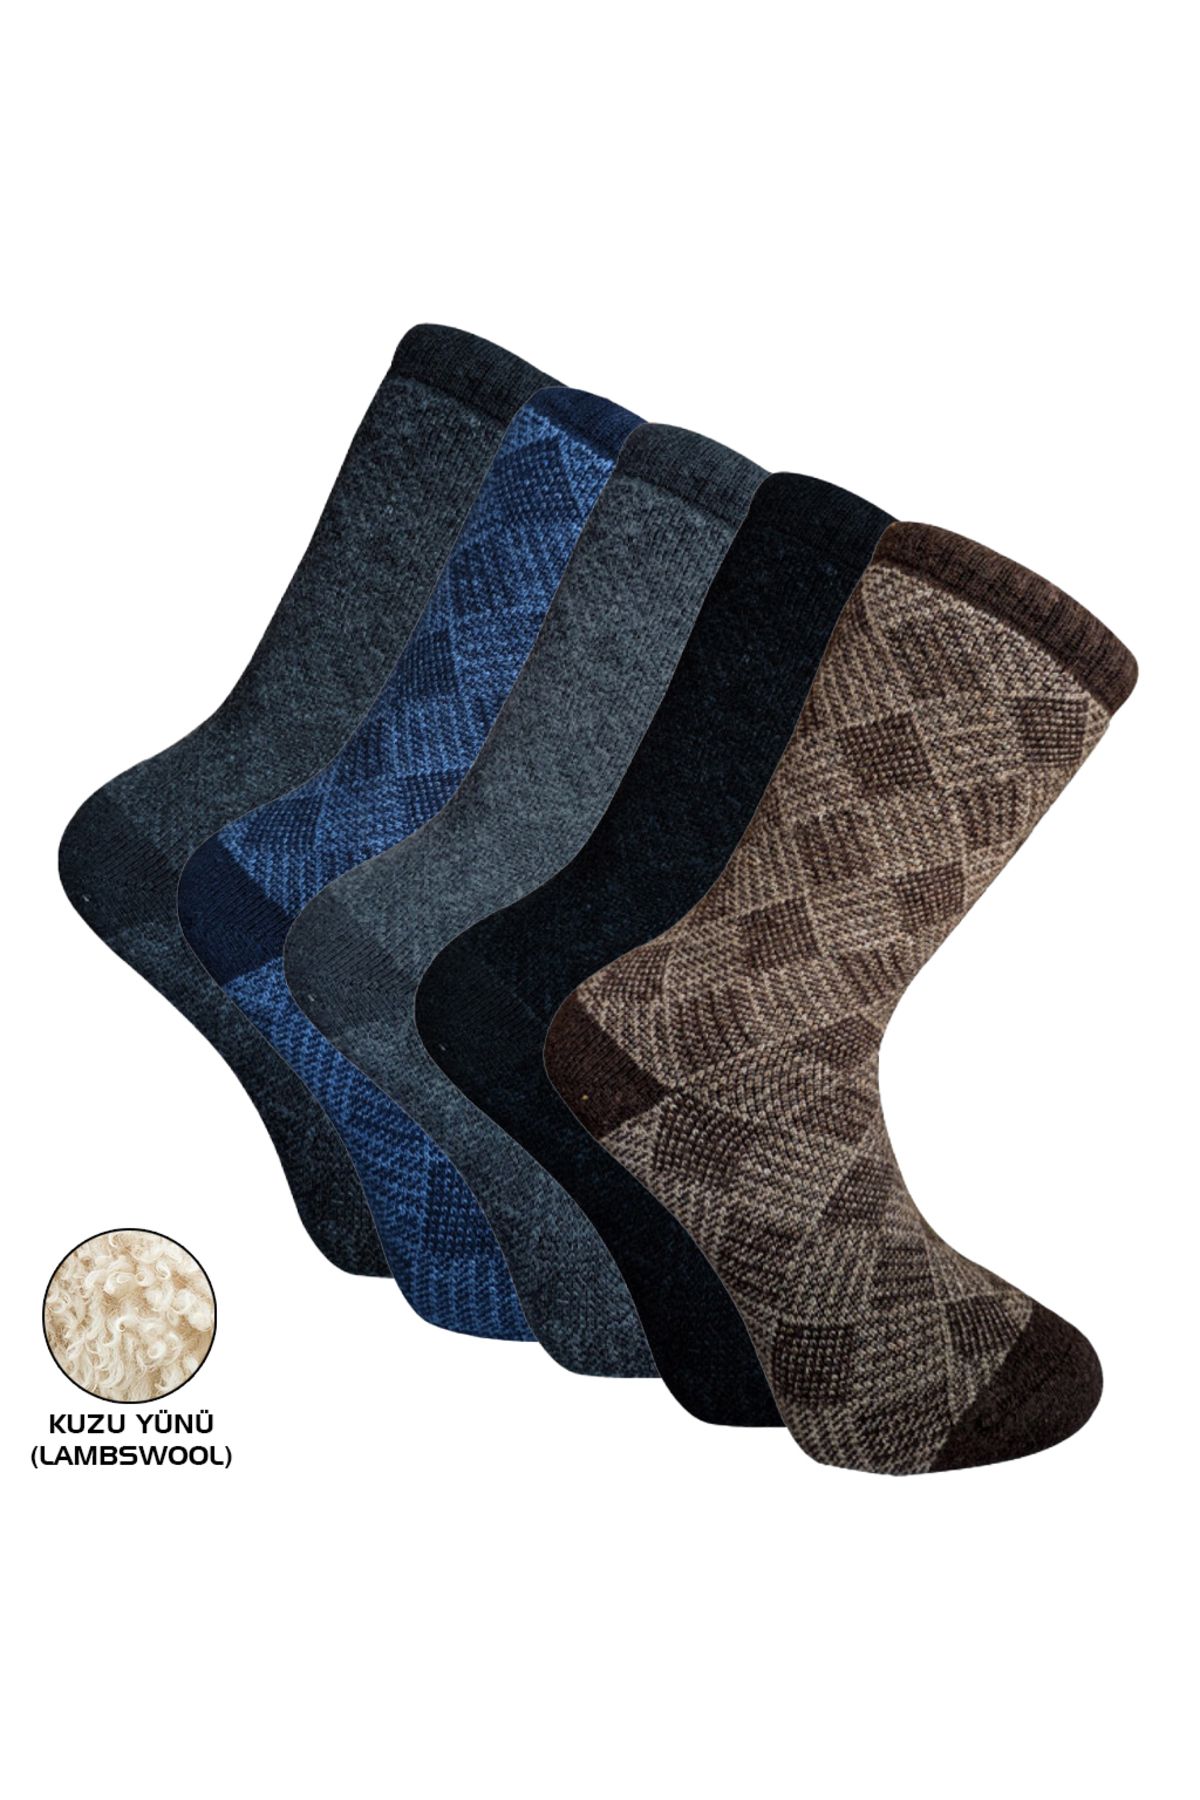 Genel Markalar Outdoor Pro Çorap Eskimo Havlu Kuzu Yünü  Erkek Çorabı 41-44 (13905)